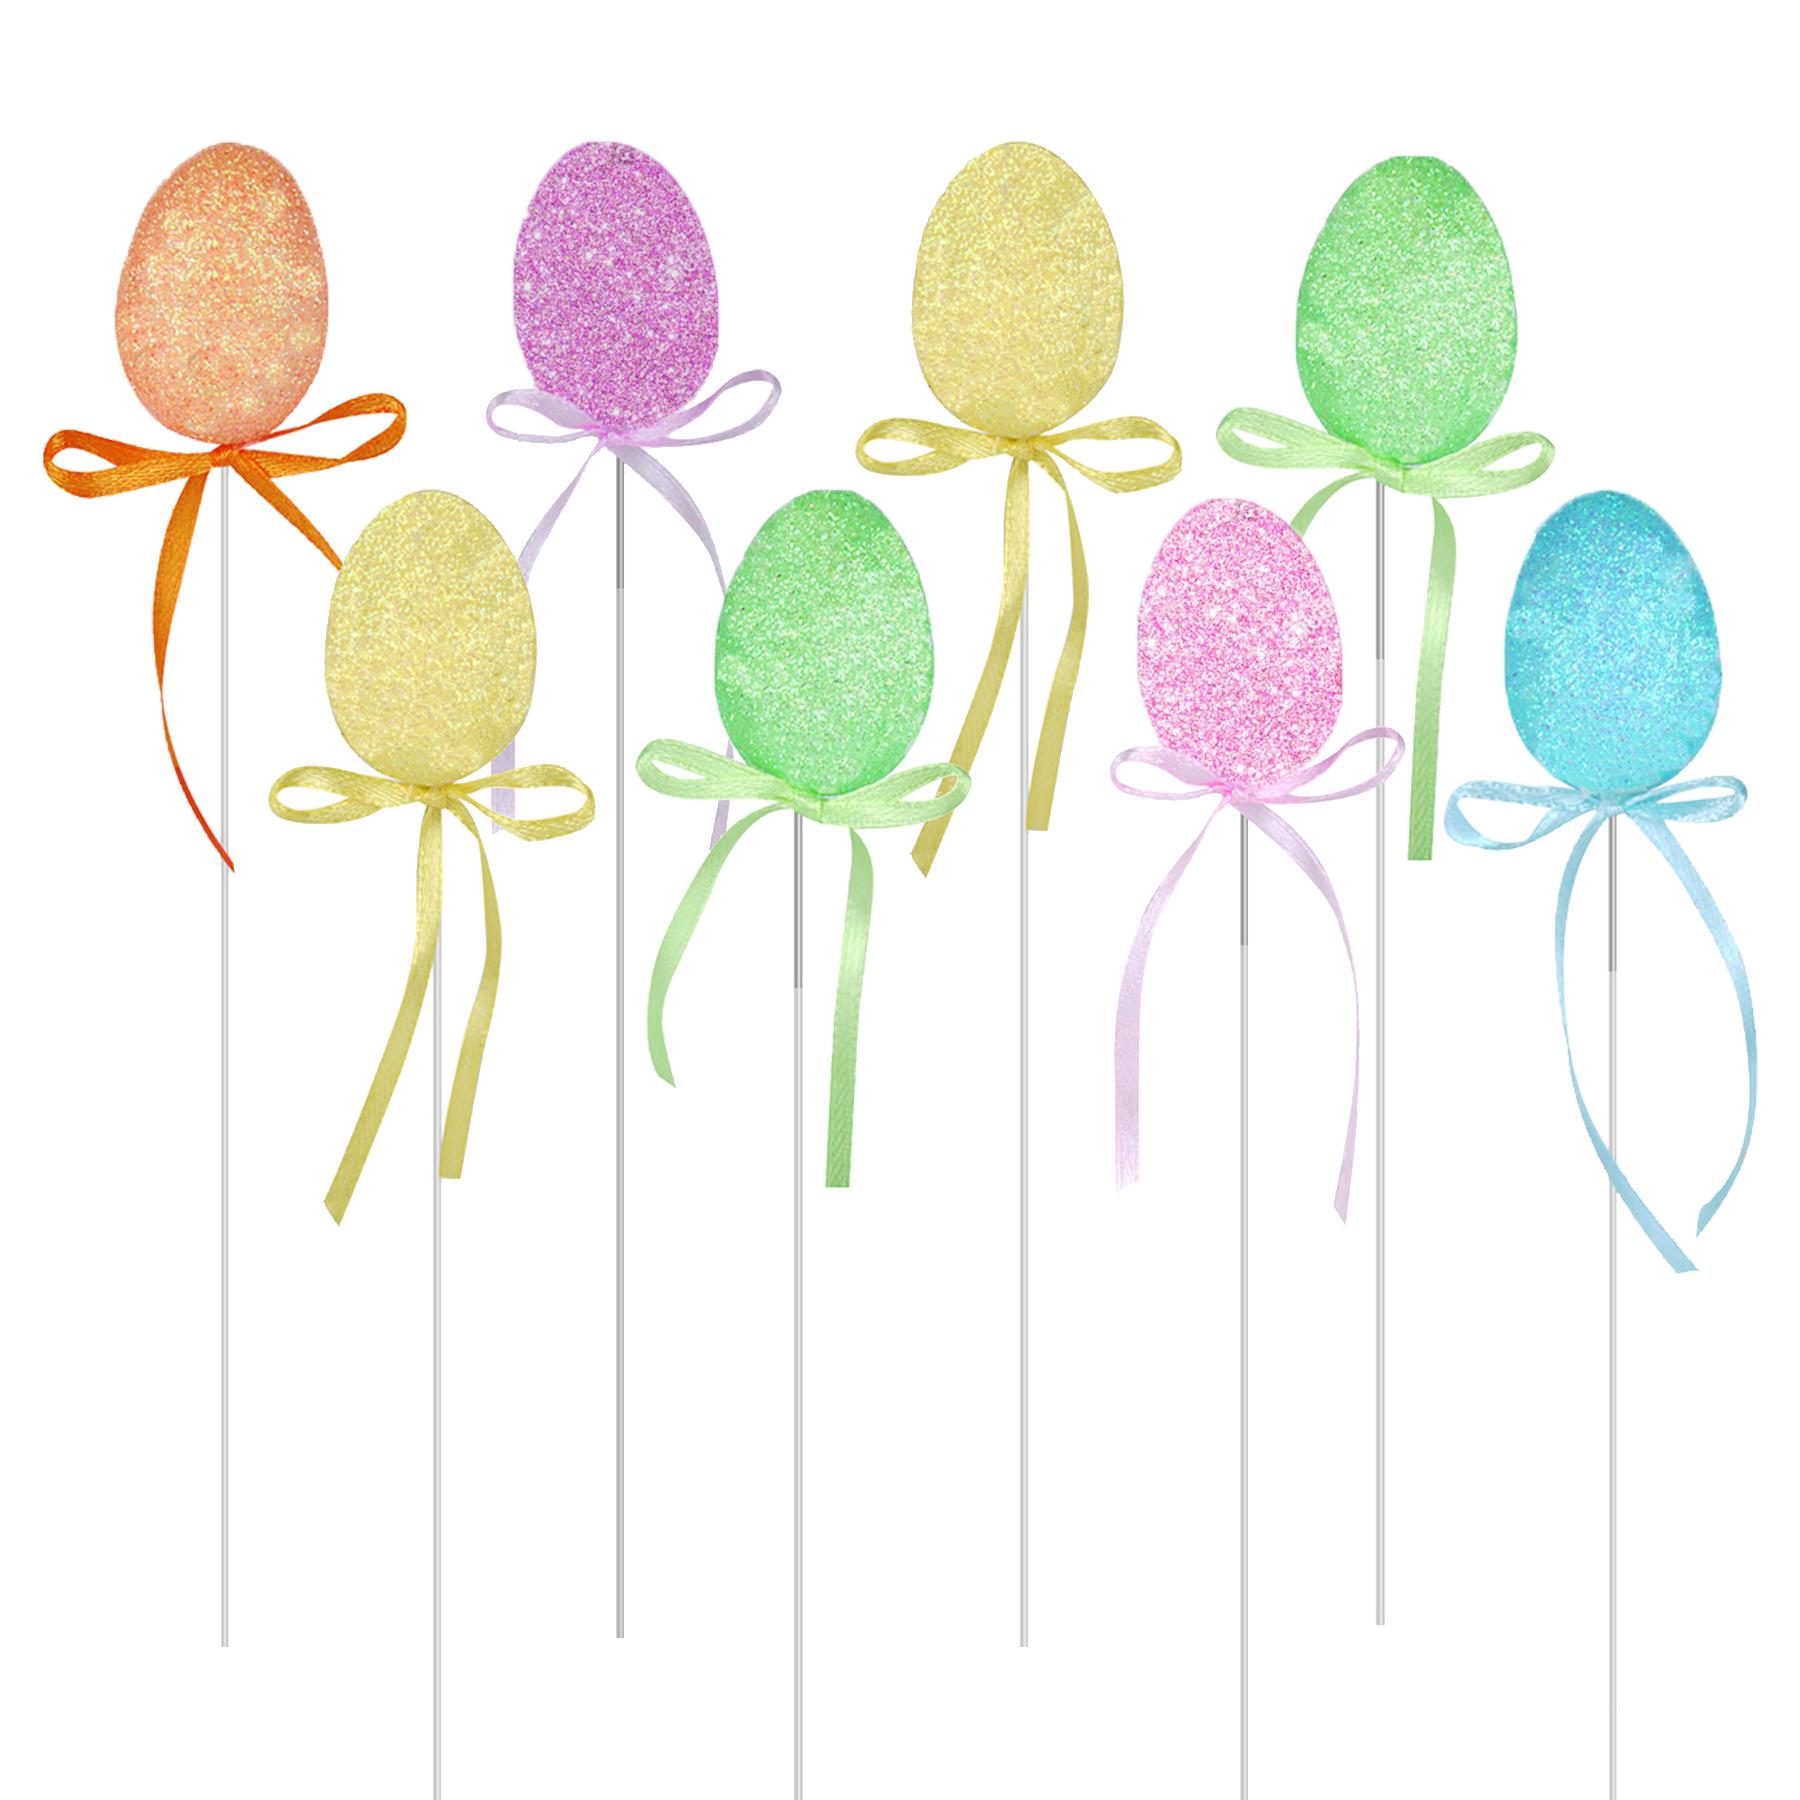 Easter Decorations, Bonnet Arts and Crafts, Egg Hunt - 8 Pack Glitter Egg Pick